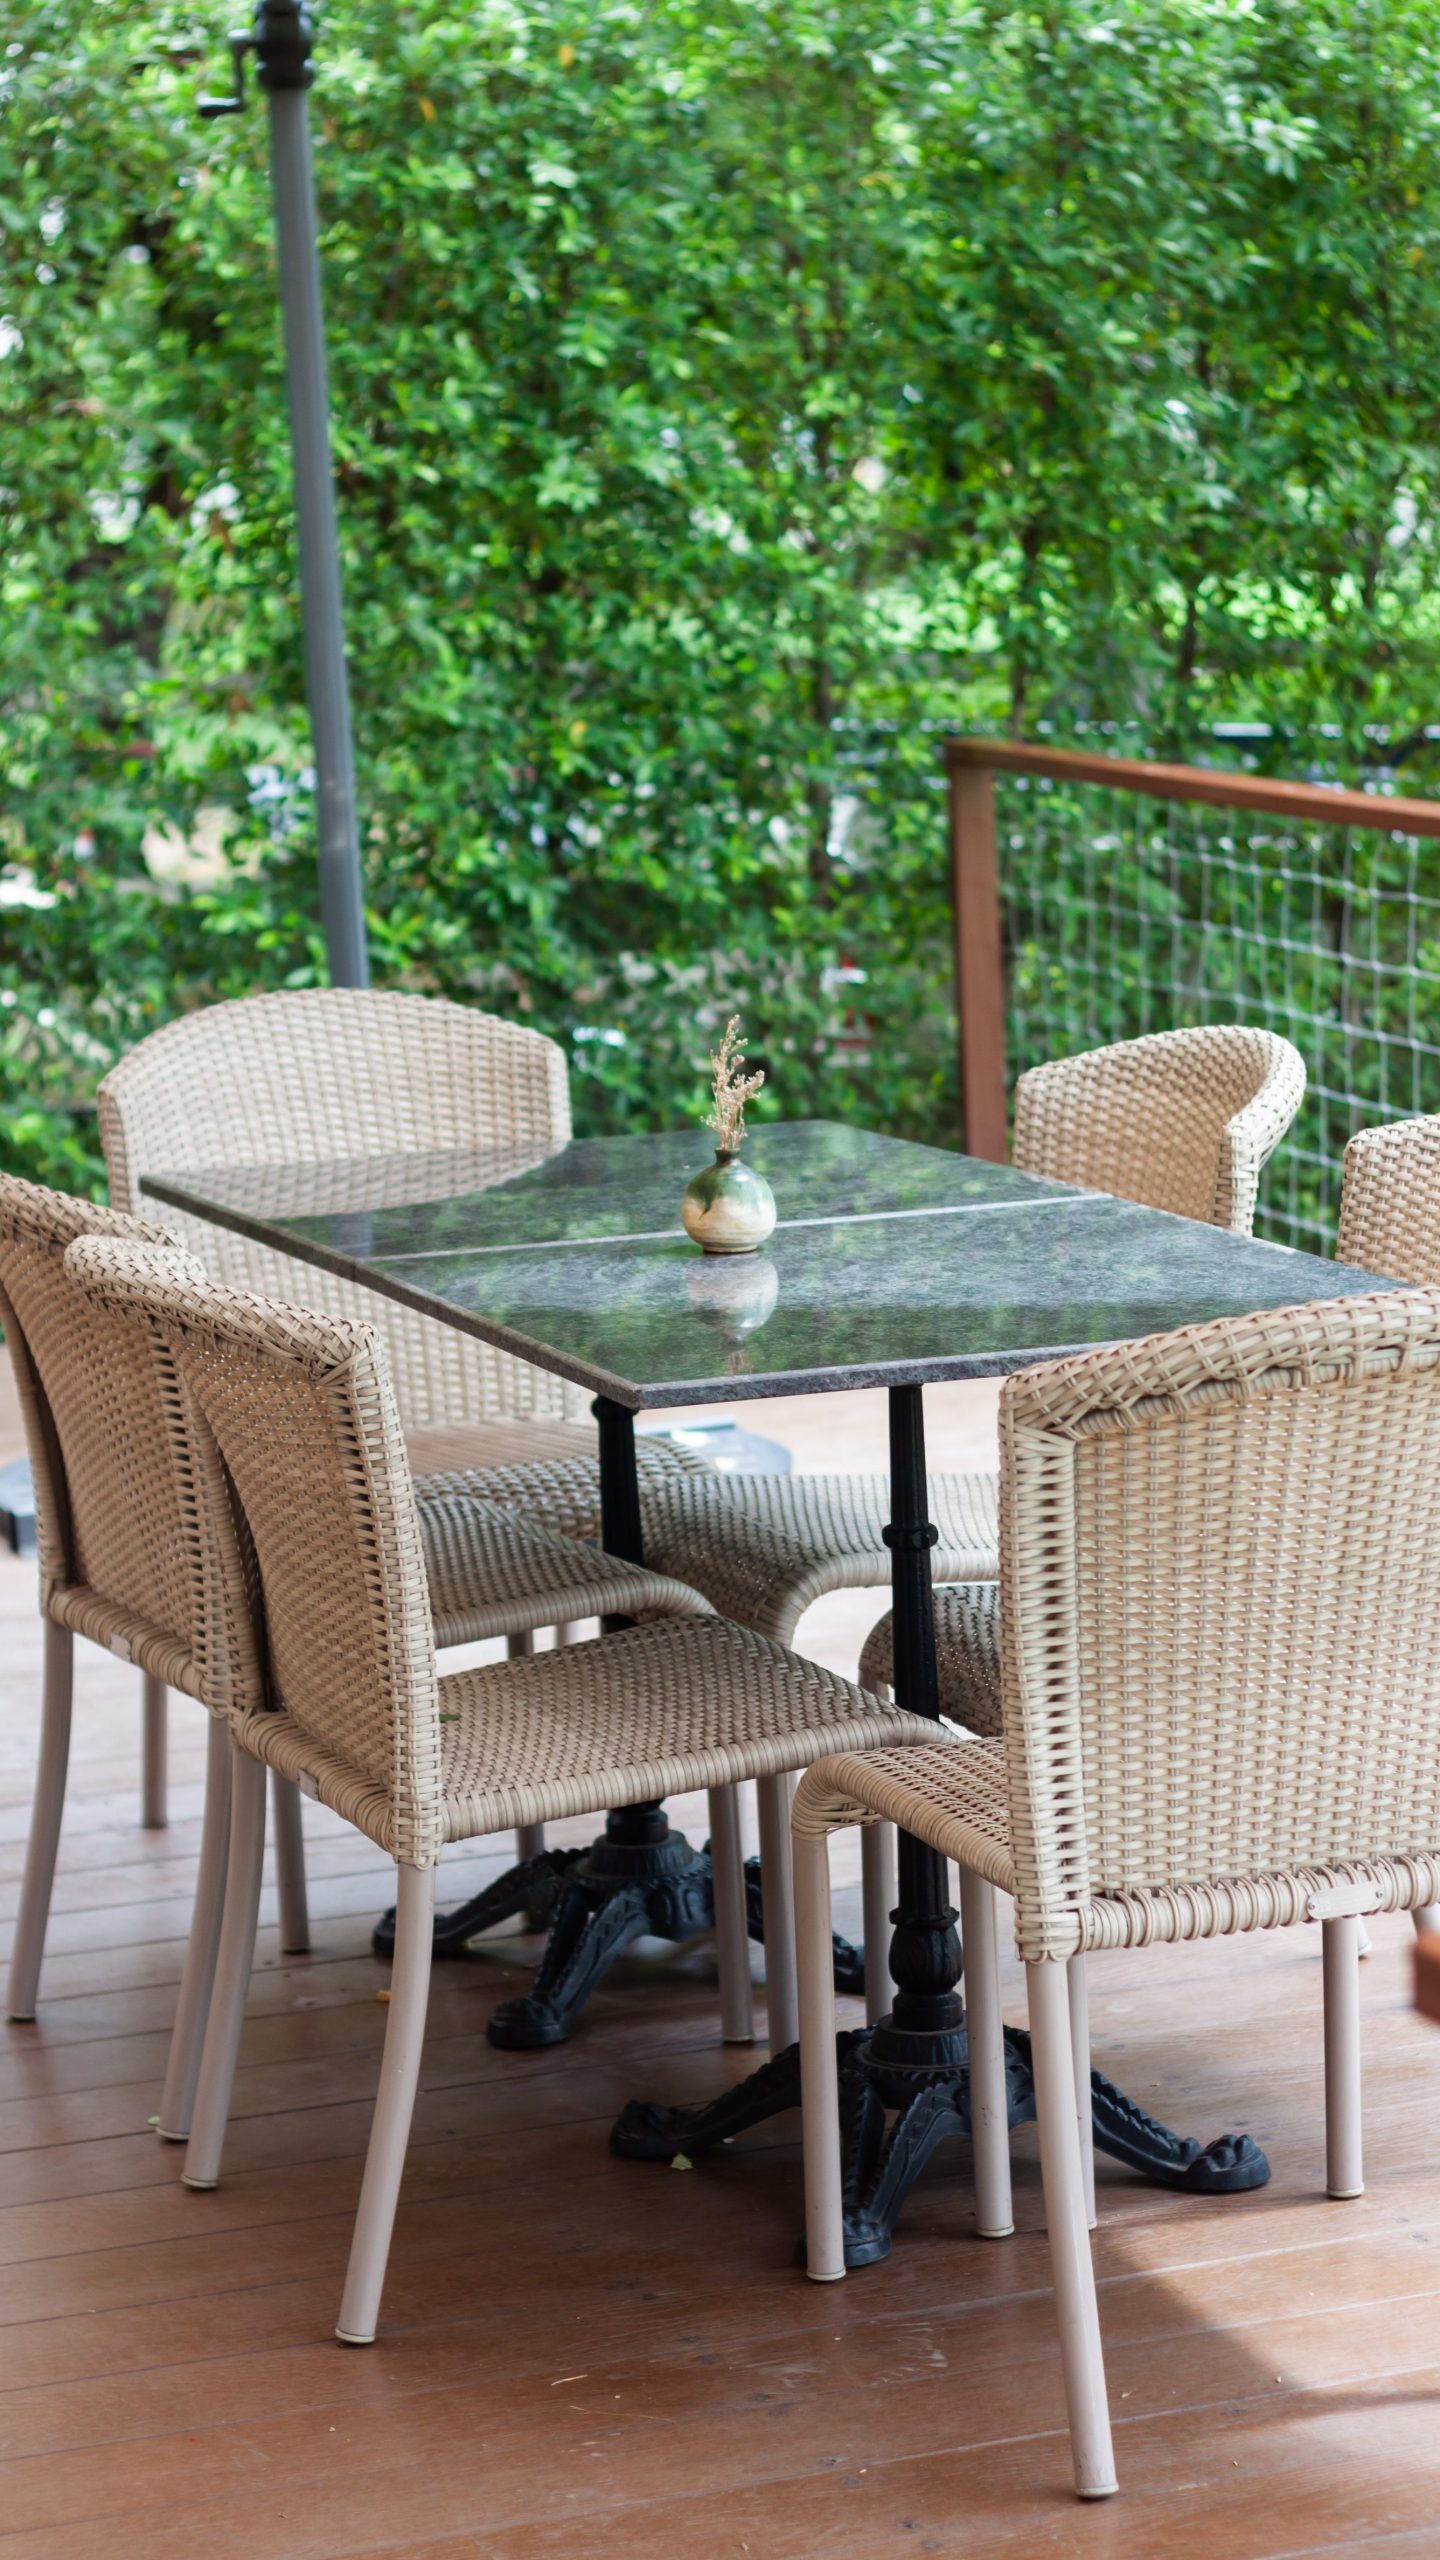 espace de coin repas extérieur avec table en verre et chaises en osier sur une terrasse en bois, entouré de feuillage vert